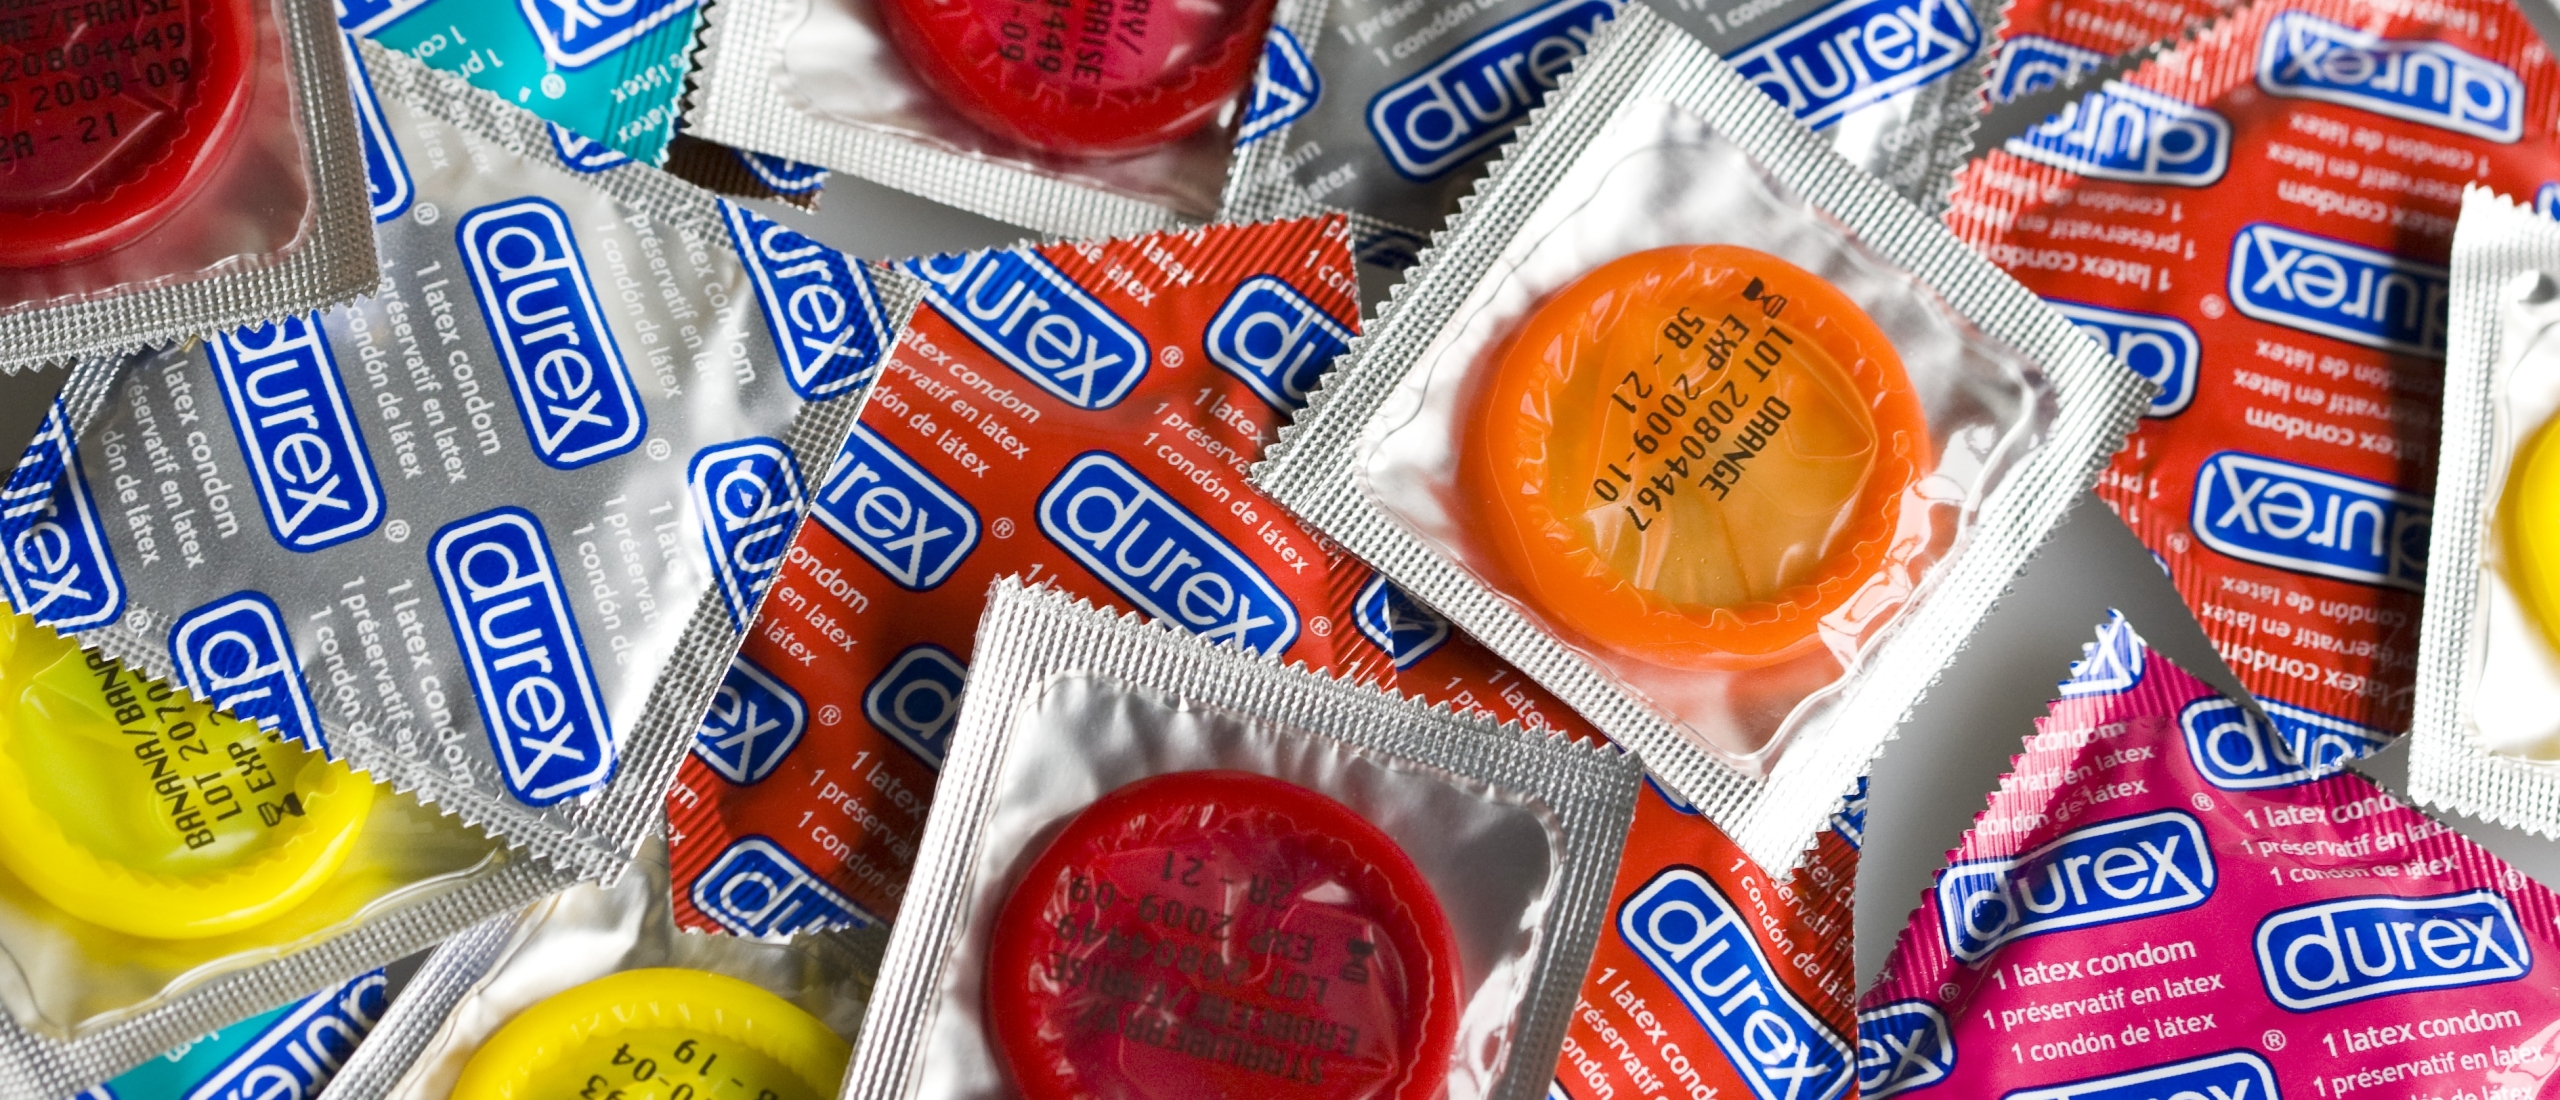 RIVM en GGD'en delen condooms uit vanwege toenemend aantal soa's